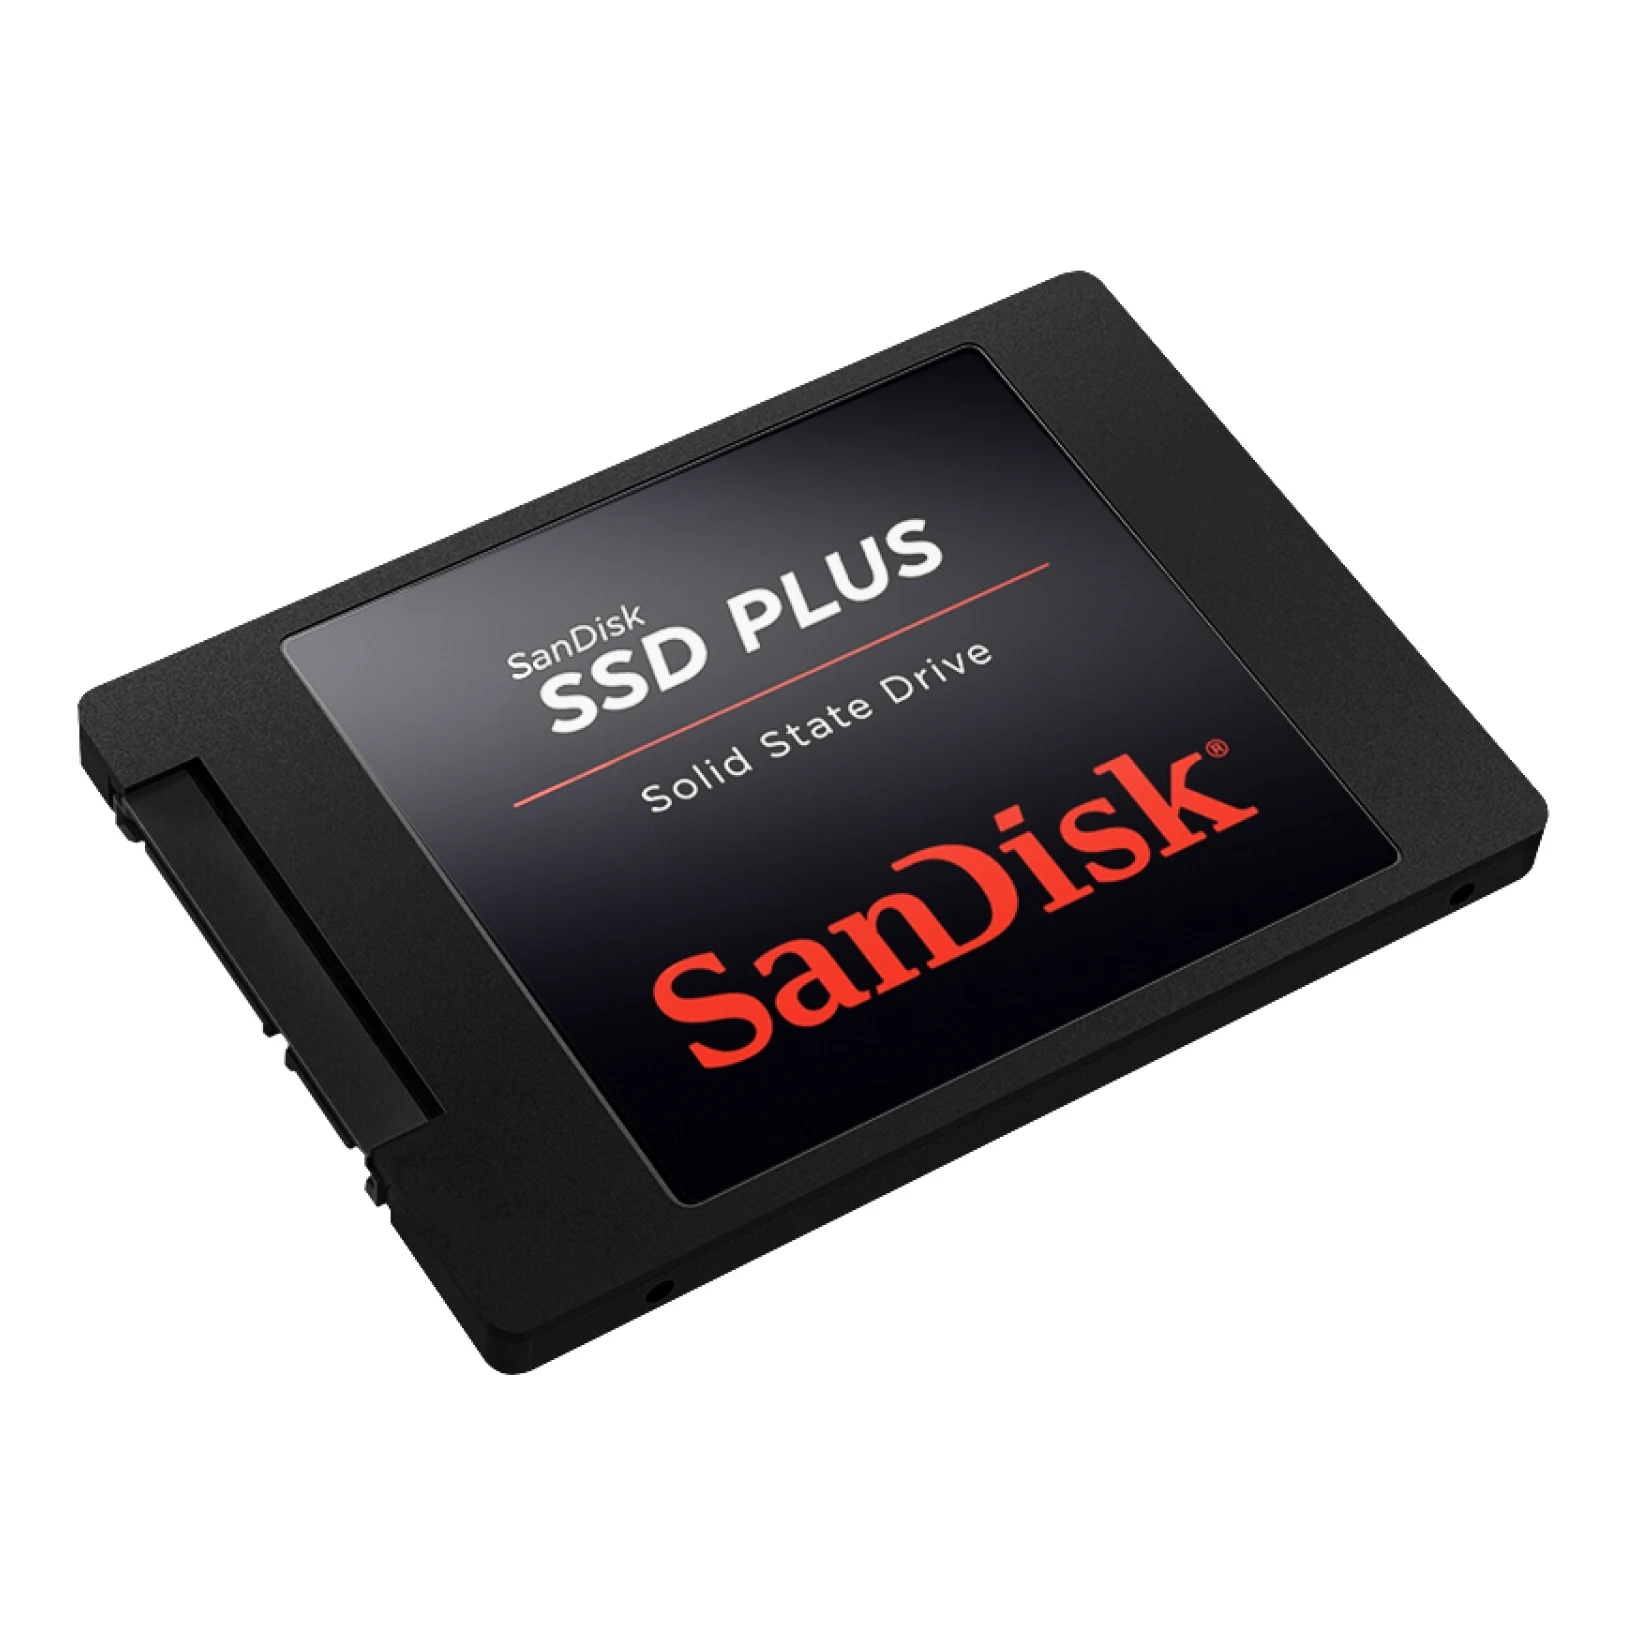 

Sandisk Ssd Plus Internal Solid State Hard Drive Disk Sata Iii 2.5" Sdssda 120gb 240 Gb 480gb 1tb Laptop Notebook Ssd 1tb